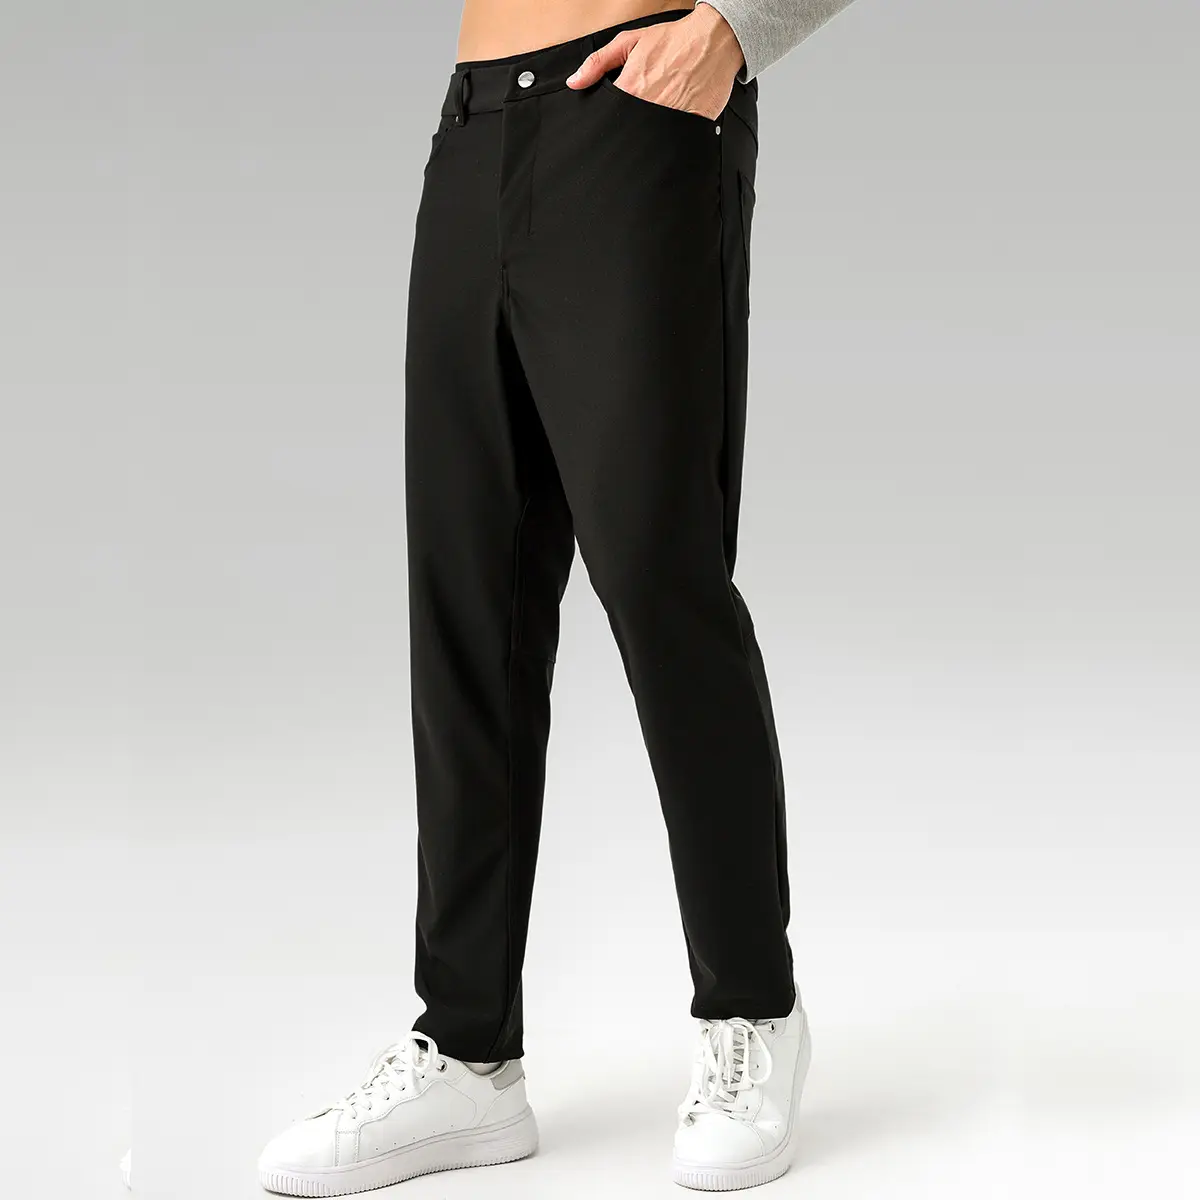 अनुकूलन लुलु एबीसी पुरुषों की कैजुअल ब्लेज़र पैंट बिजनेस कम्यूट दो पहनने वाली पैंट फिटनेस सांस लेने योग्य जल्दी सूखने वाली पैंट